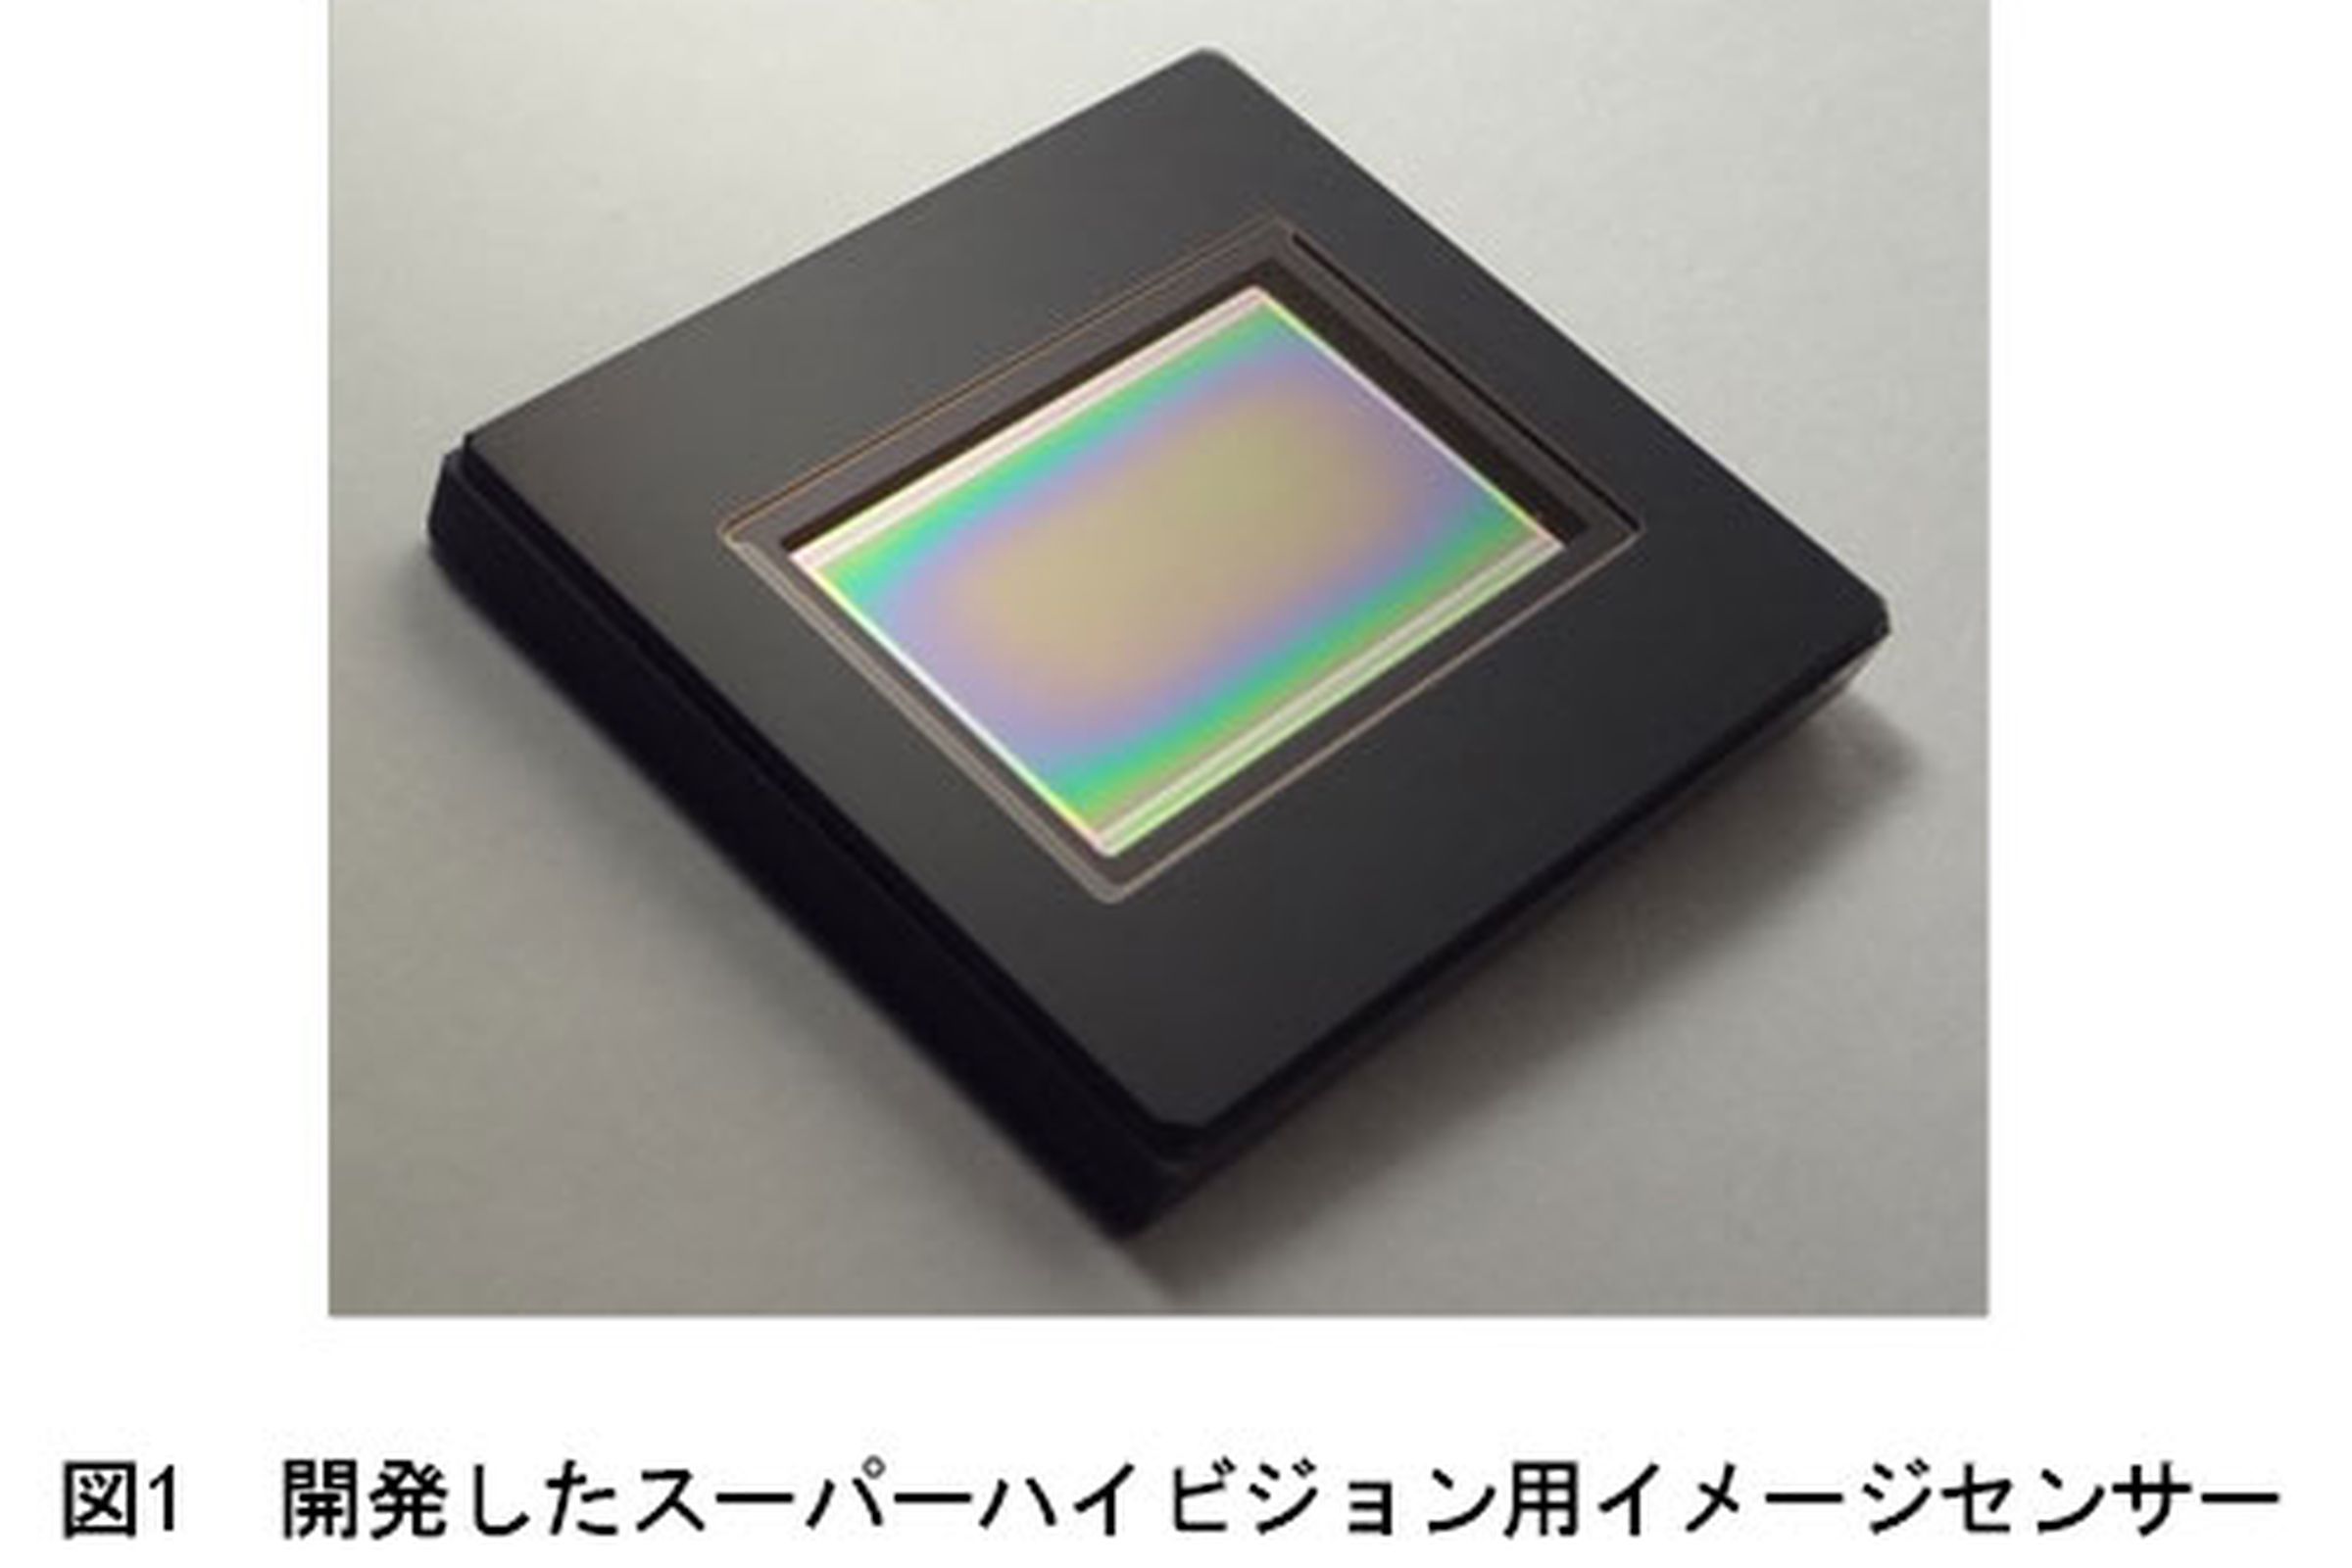 NHK image sensor